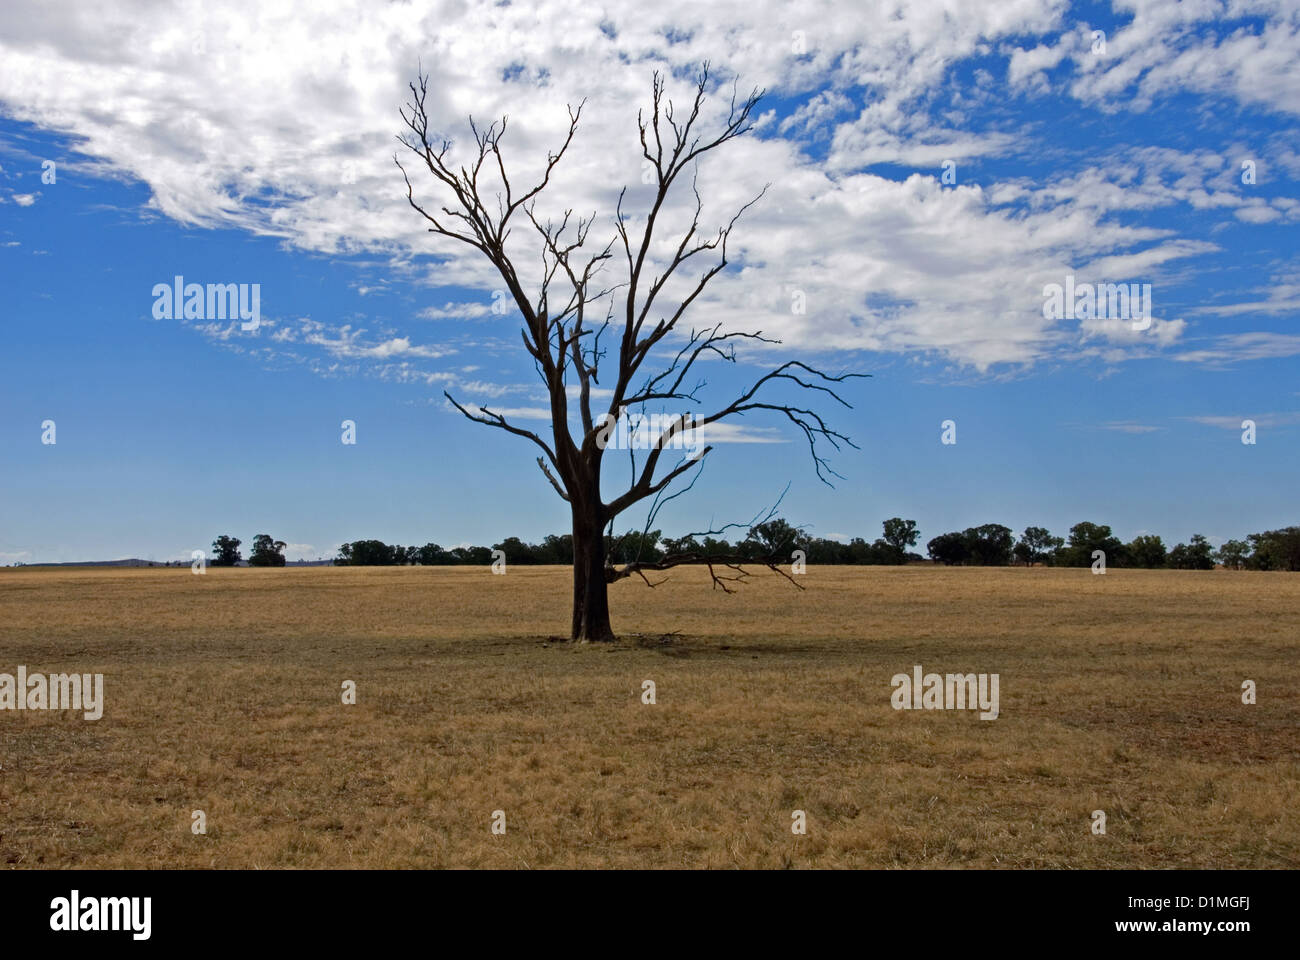 A dead tree on a farm in North-Western Victoria, Australia Stock Photo